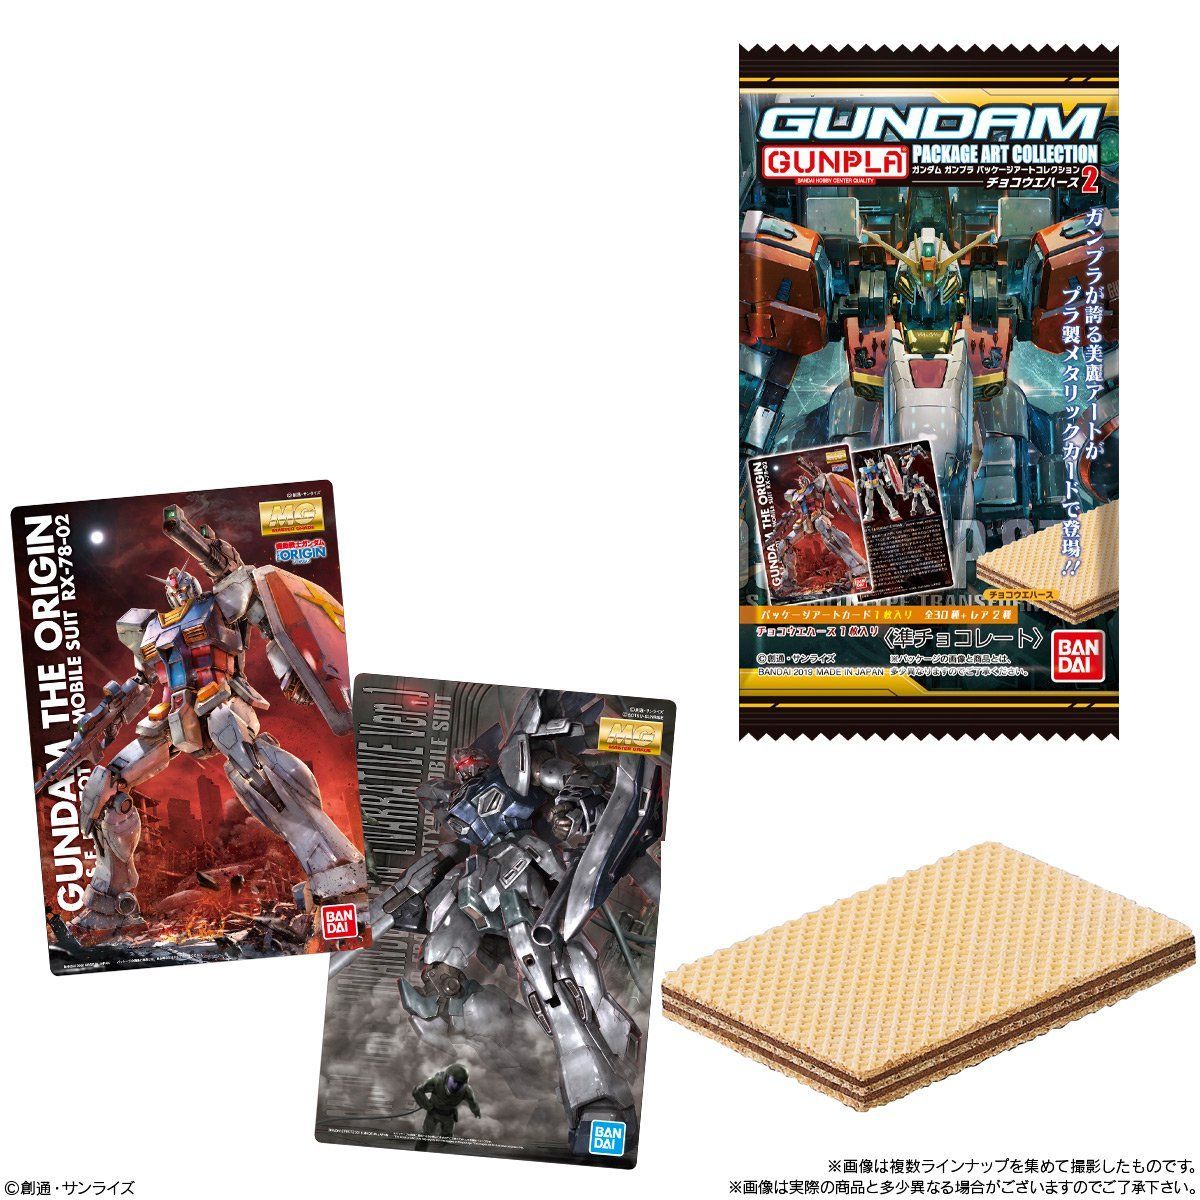 【食玩】『GUNDAMガンプラパッケージアートコレクション チョコウエハース2』20個入りBOX-002